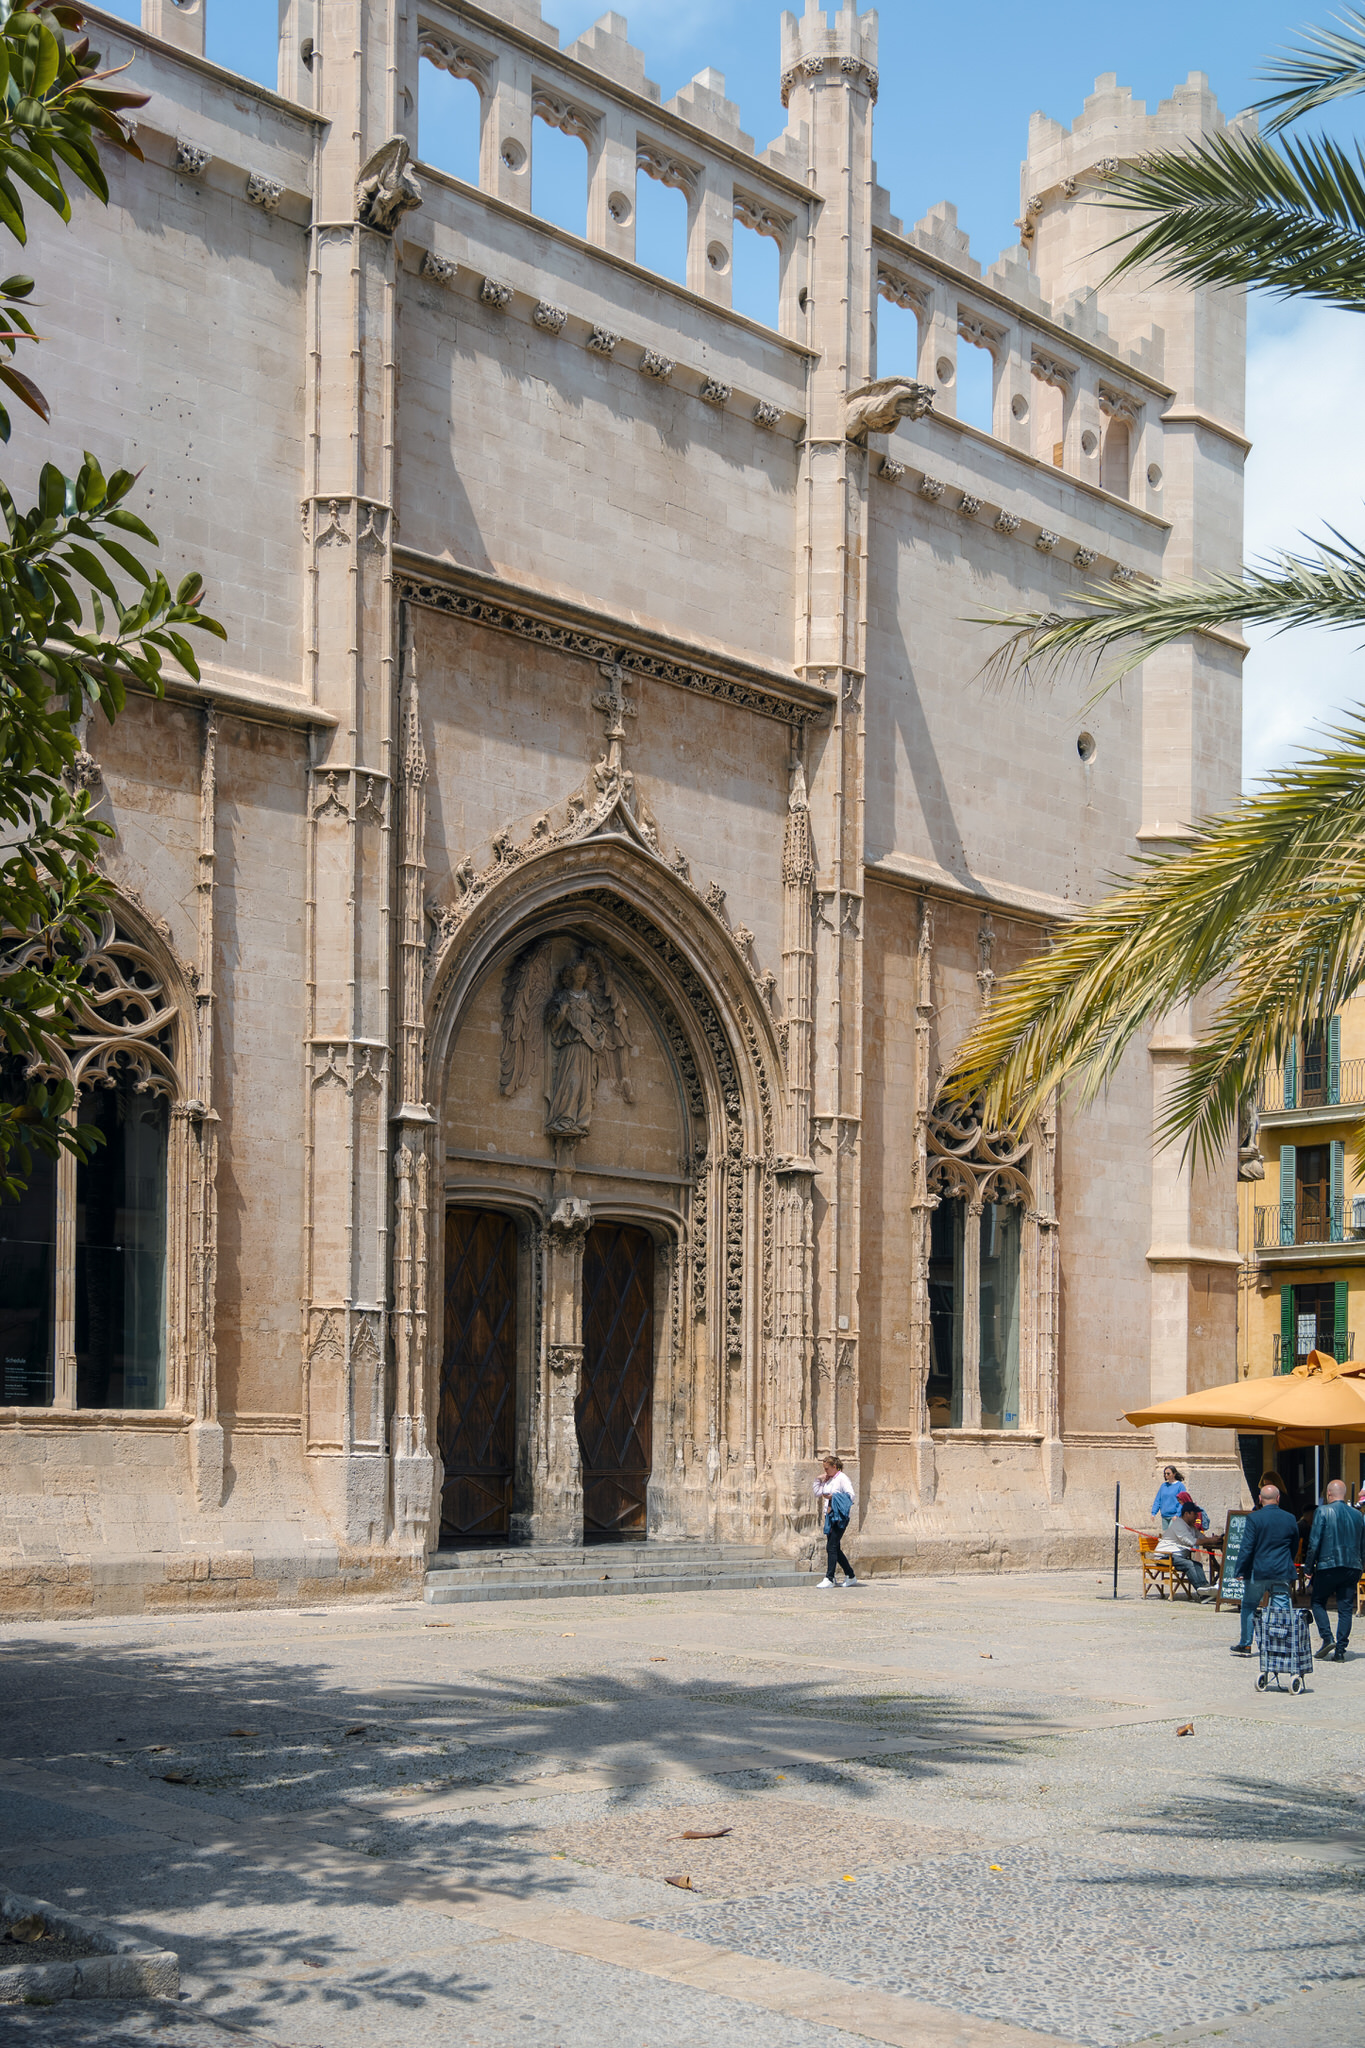 32.	Fotografía de la entrada y la arquitectura de la lonja de Mallorca